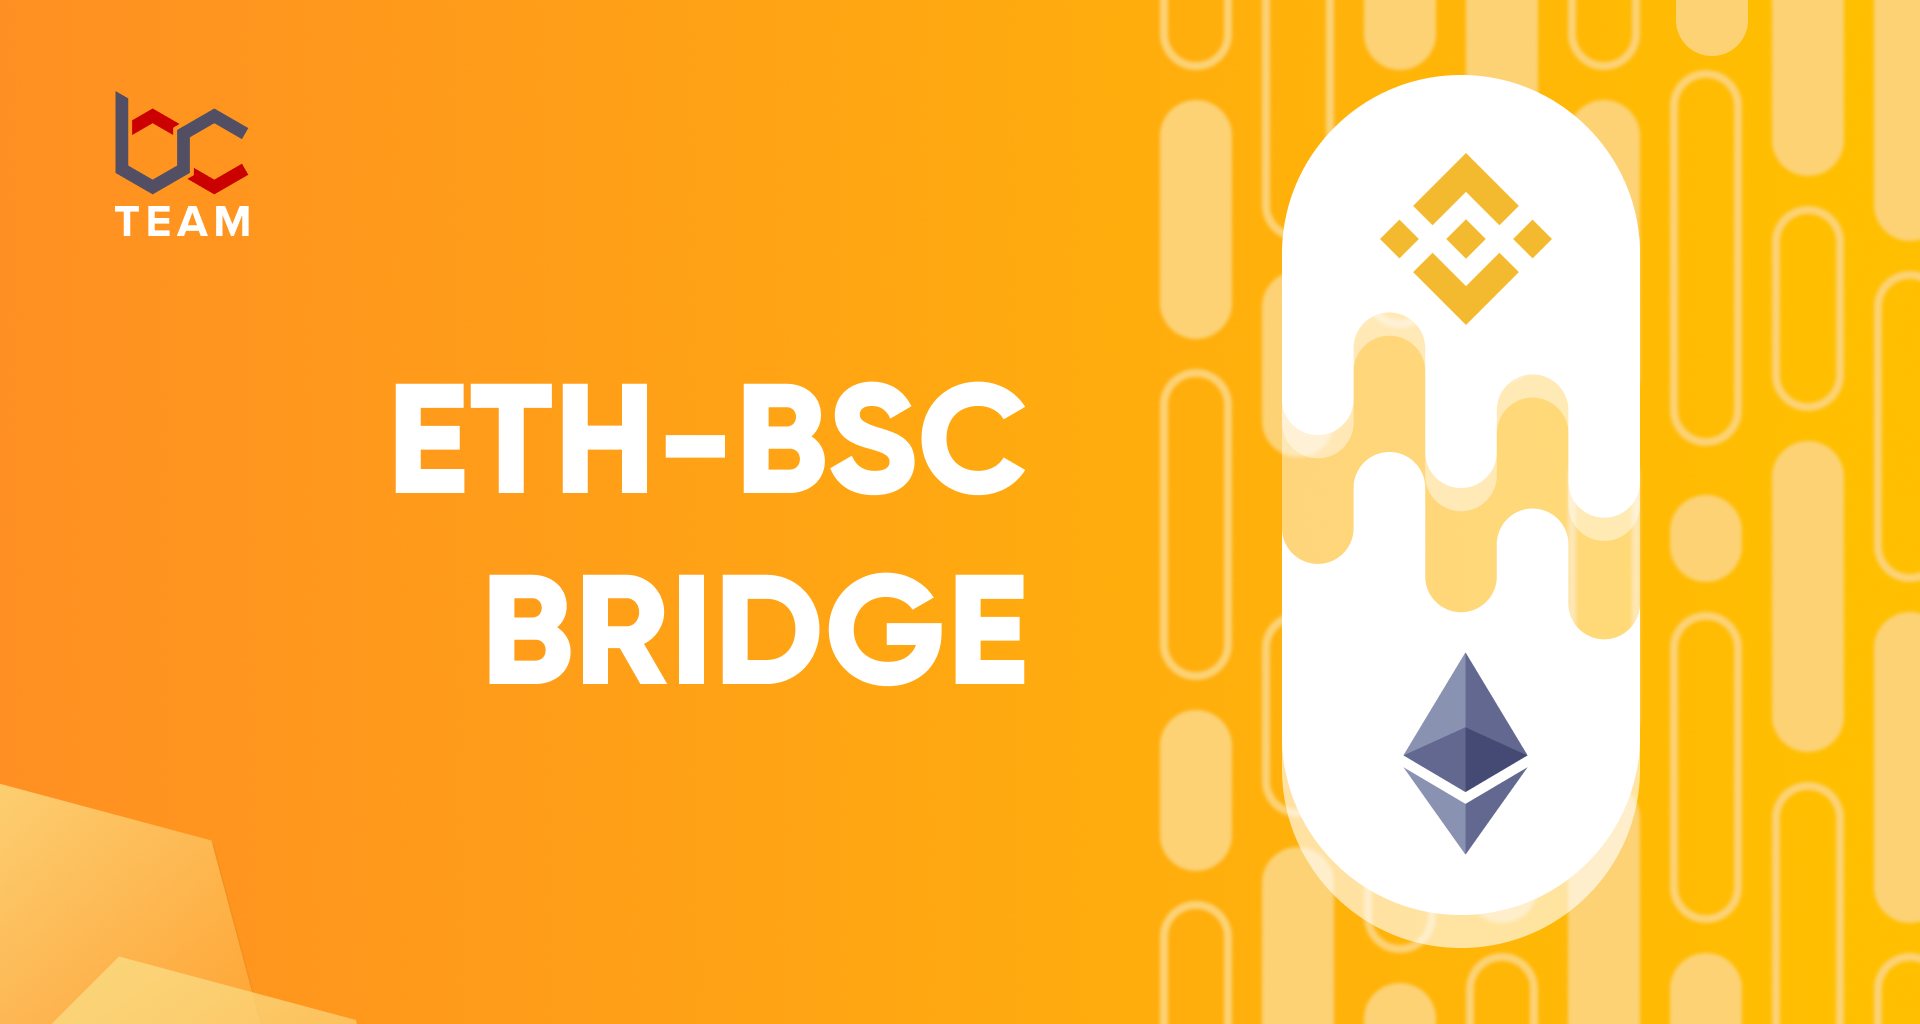 Creating an ETH-BSC bridge